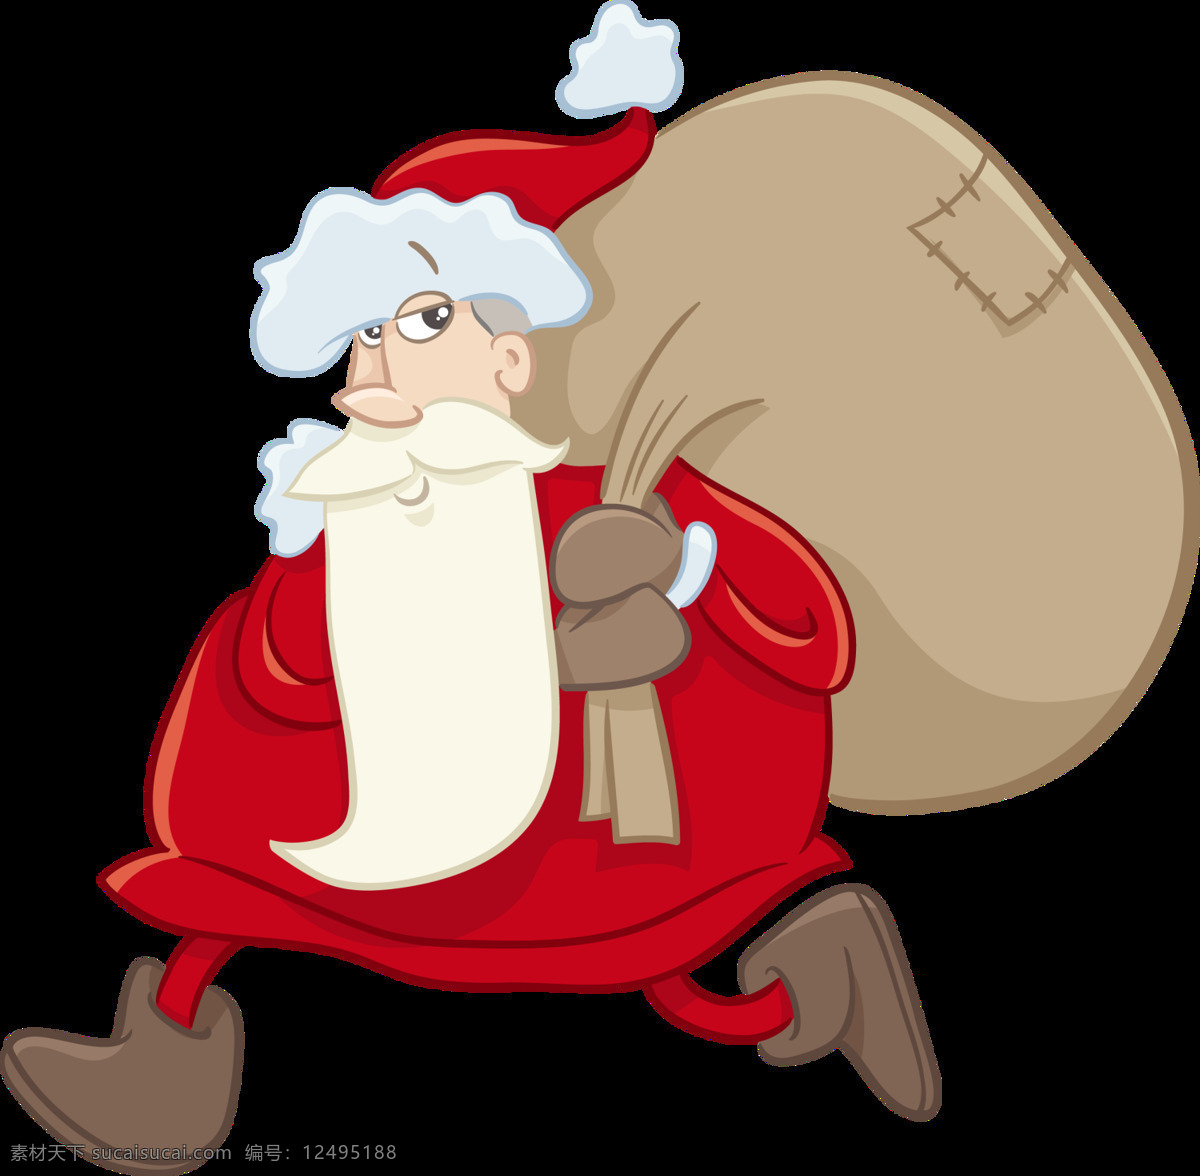 背着 布袋 圣诞老人 抽象元素 节日元素 卡通圣诞元素 铃铛 设计元素 圣诞png 圣诞布袋 圣诞节 圣诞节快乐 圣诞免抠元素 圣诞透明元素 圣诞装扮